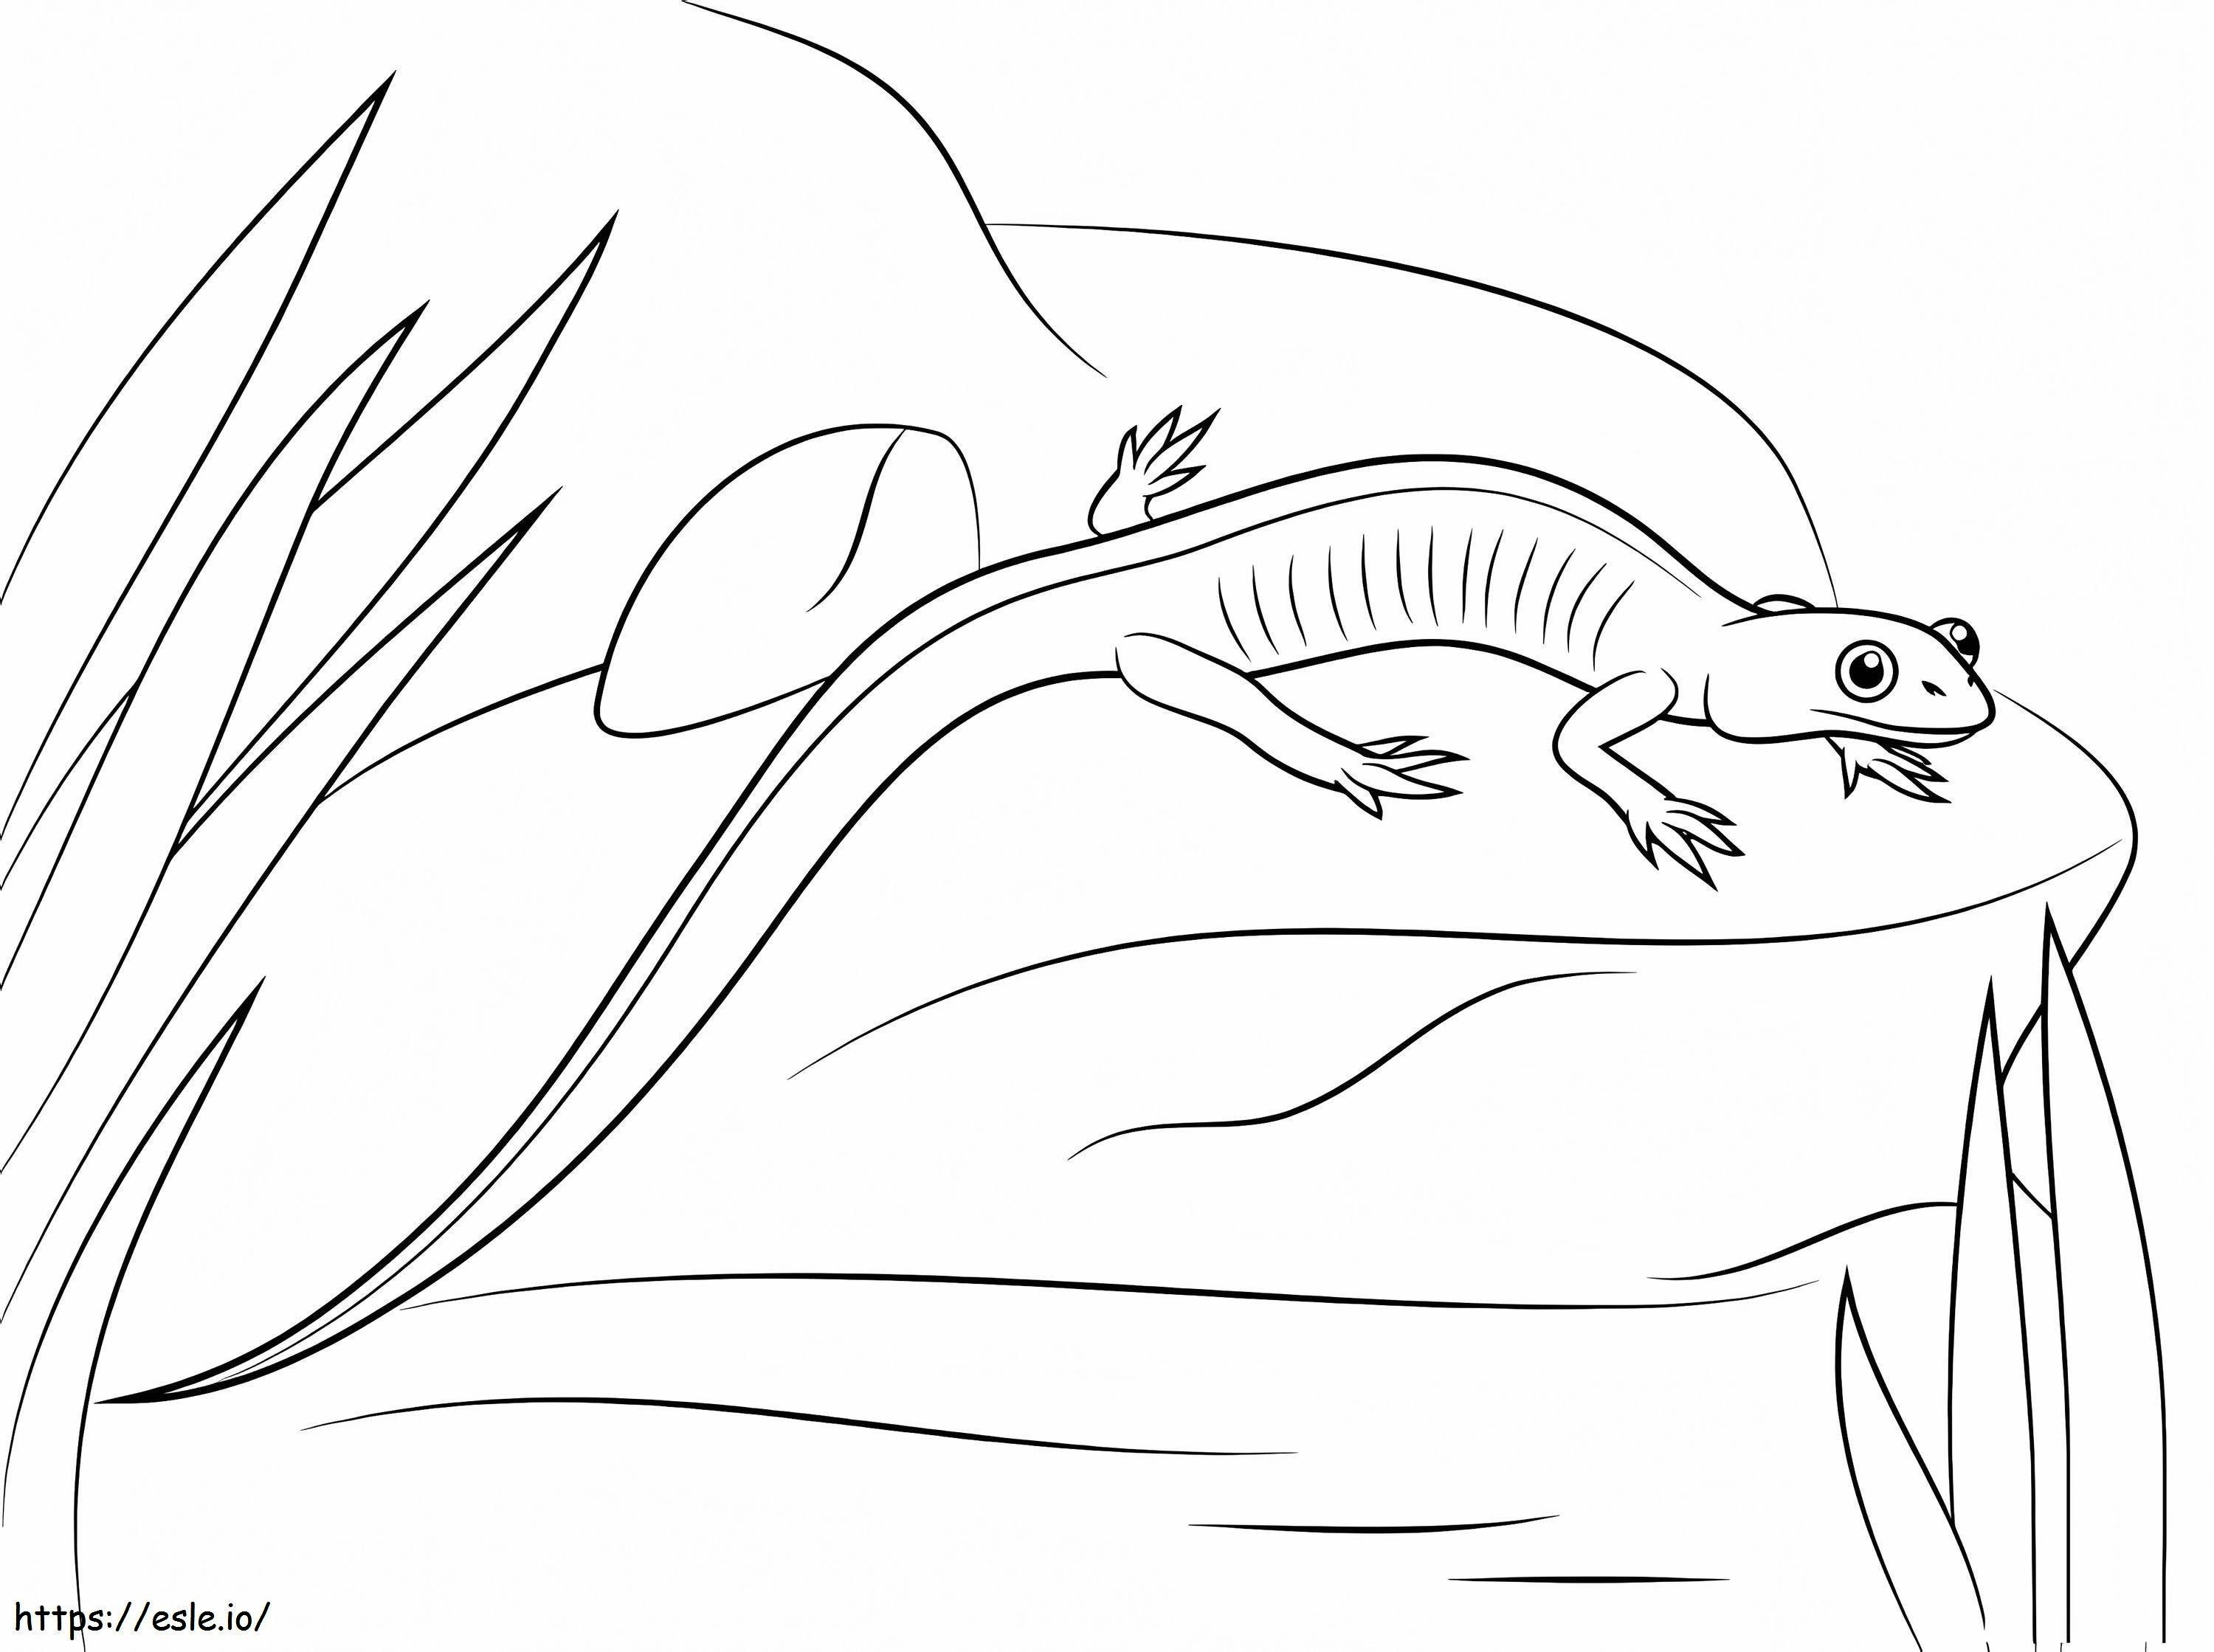 Northern Gray Cheeked Salamander coloring page